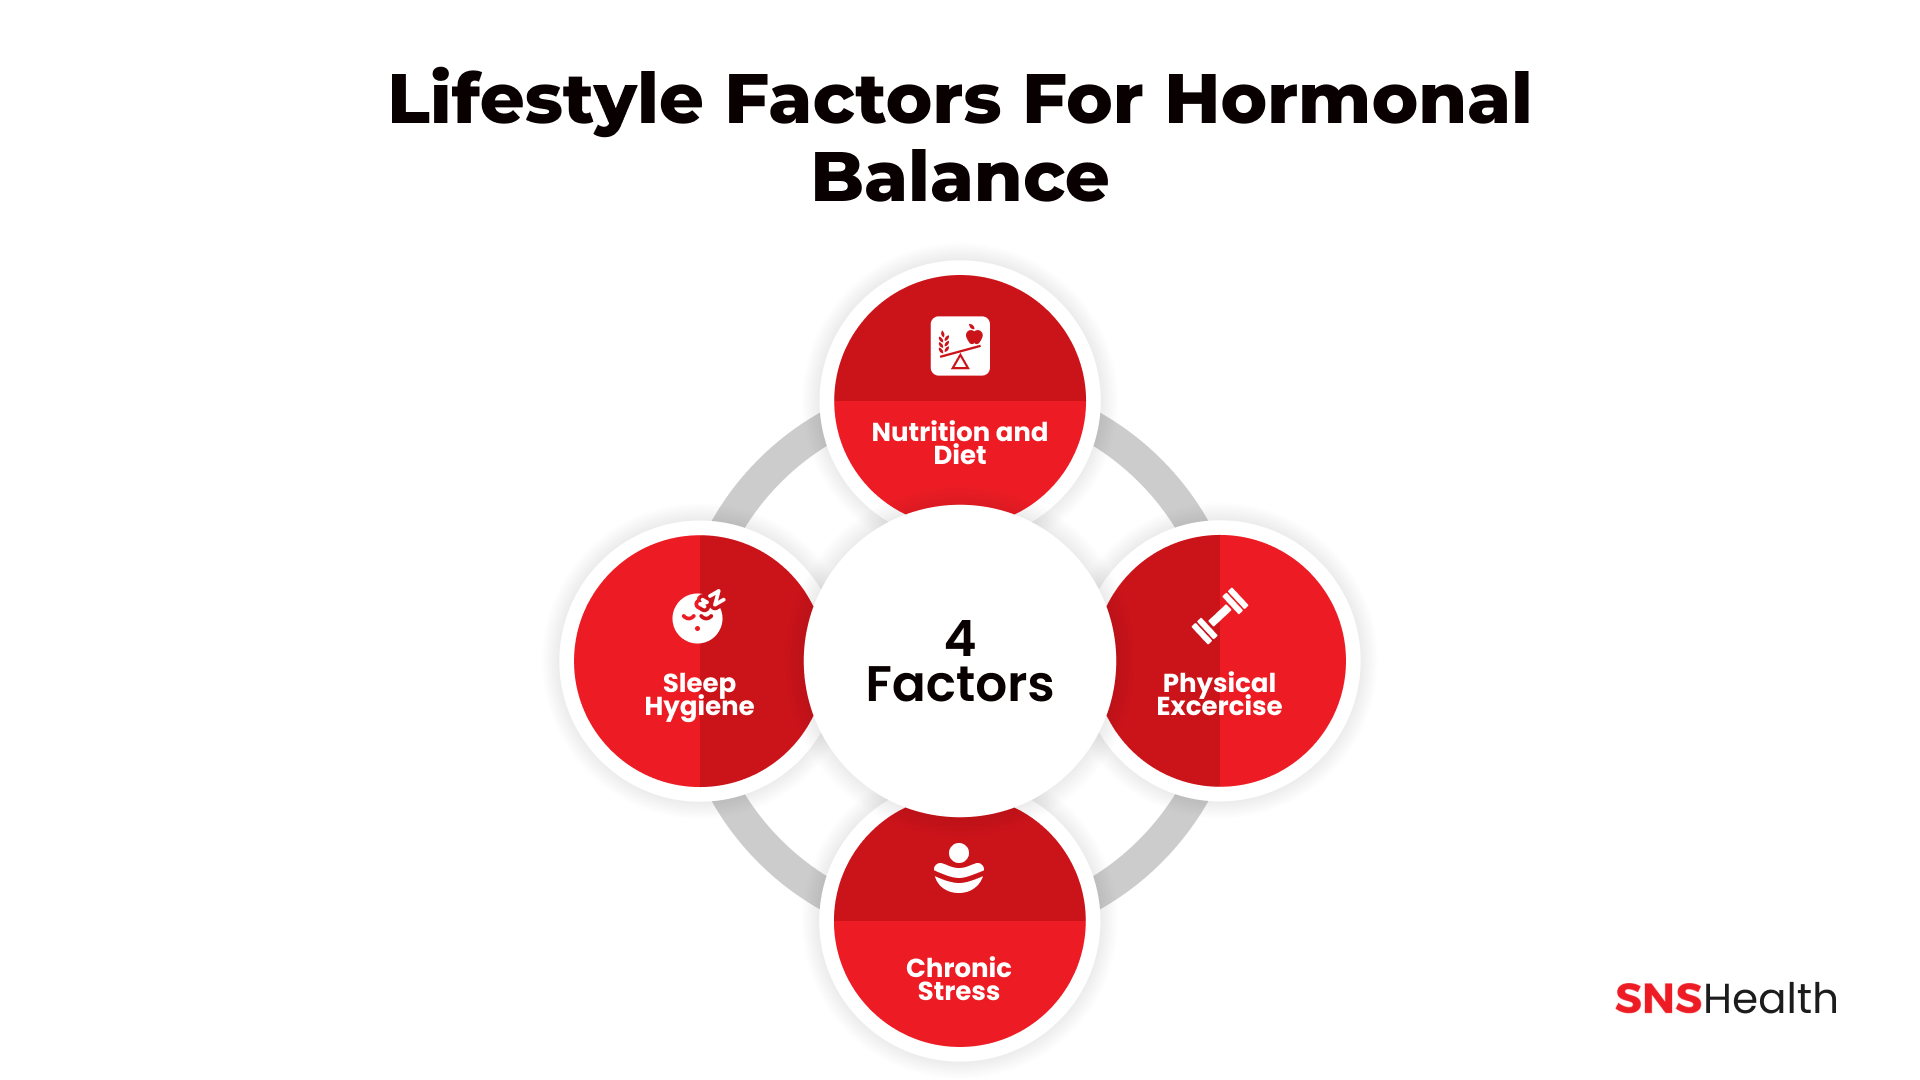 Lifestyle Factors for Hormonal Balance